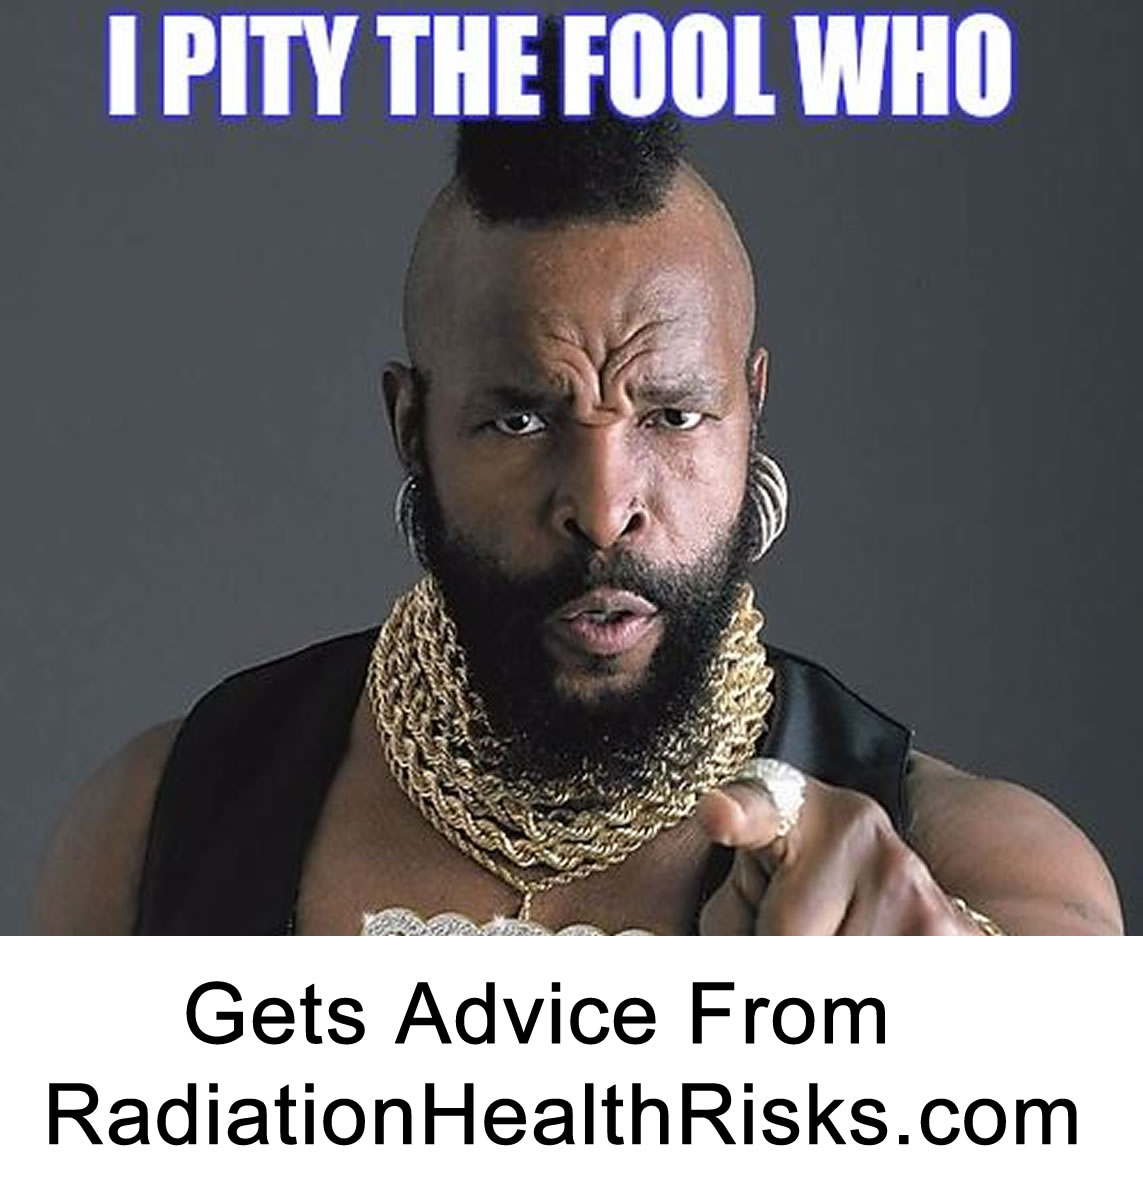 fools-radiation-advice-radiationhealthrisks.com